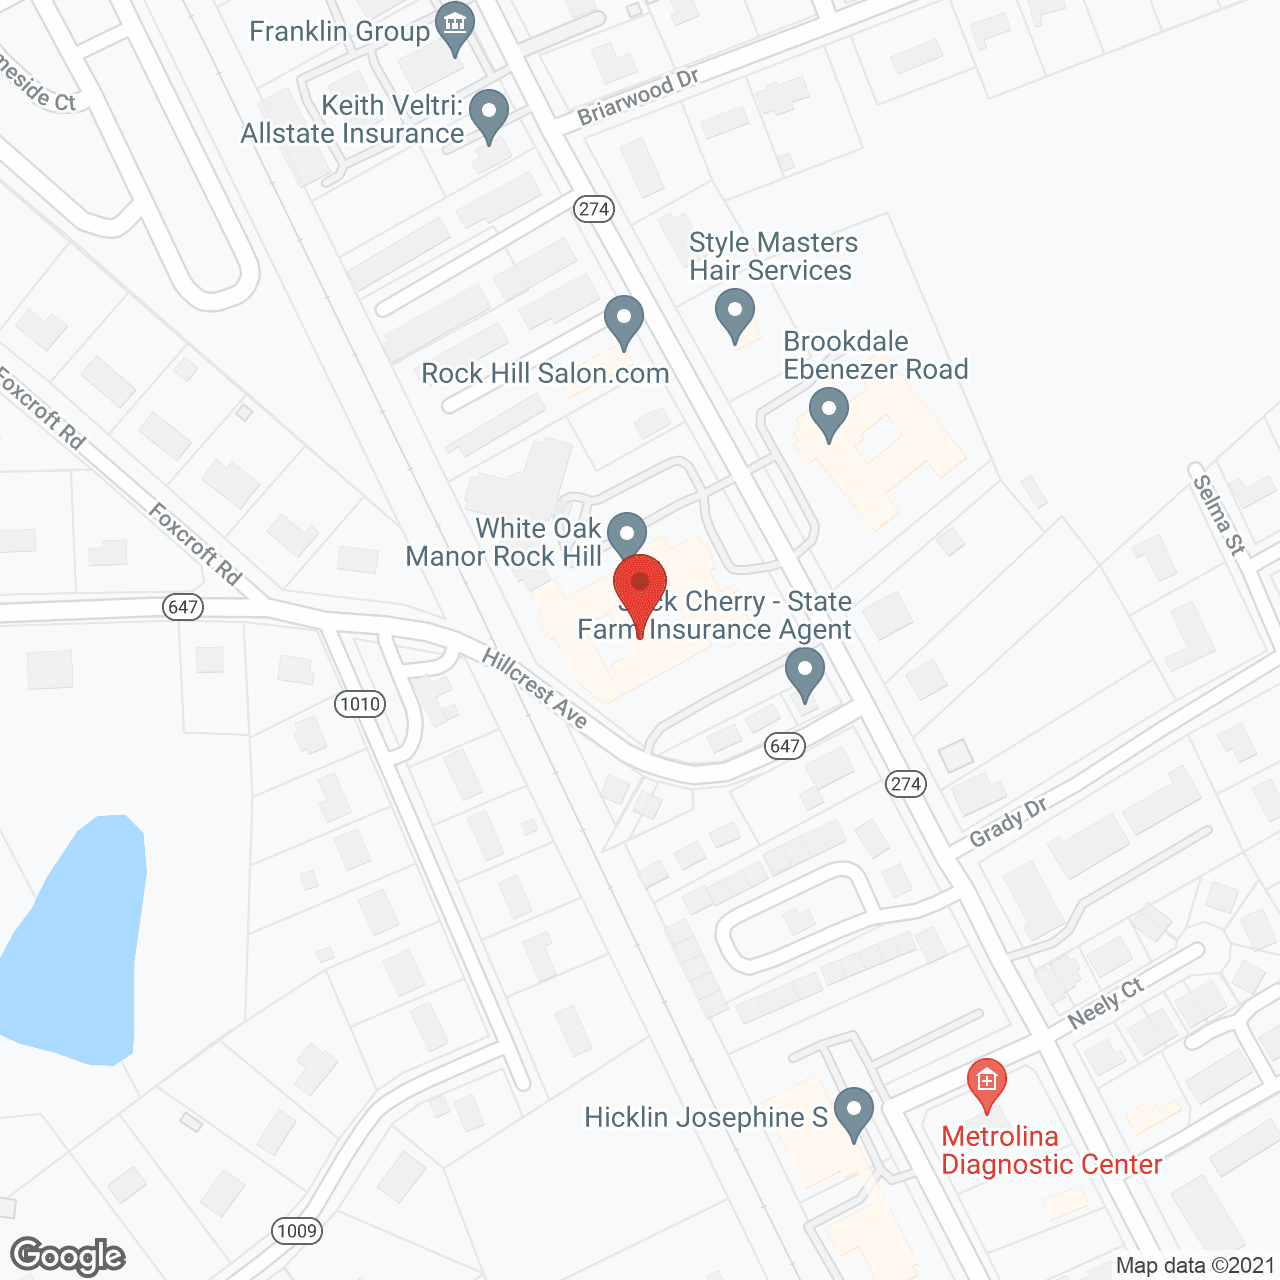 White Oak of Rock Hill in google map